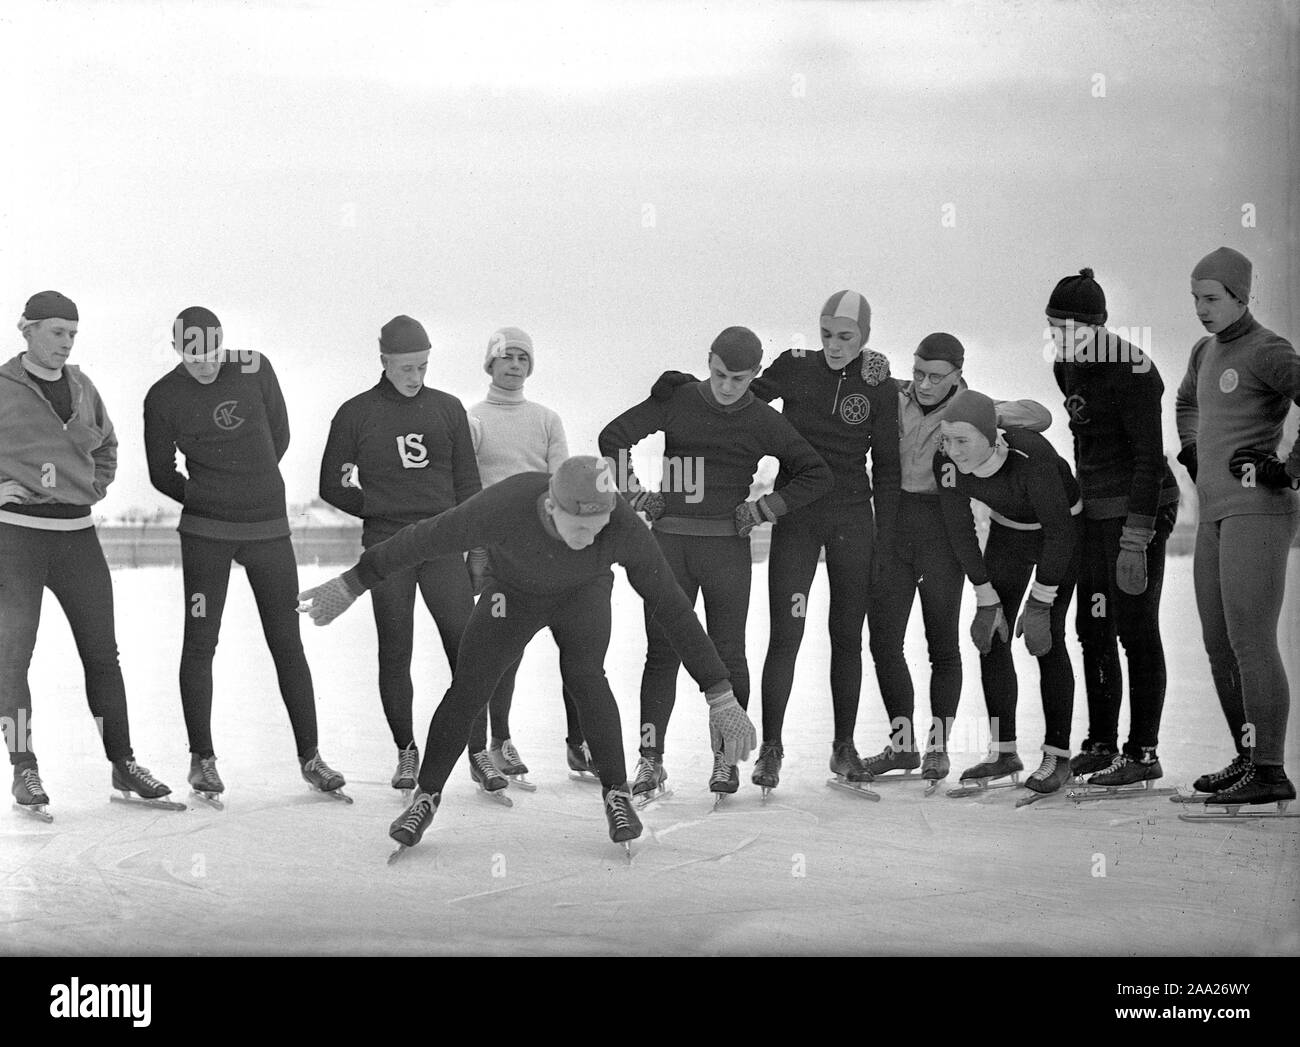 1930 Activités d'hiver. Un groupe de longue distance amateur a scaters réunis autour d'un homme qui leur indique une ou deux choses à penser lorsque vous patinez sur les patins. Décembre 1939 La Suède Kristoffersson ref 52-3 Banque D'Images